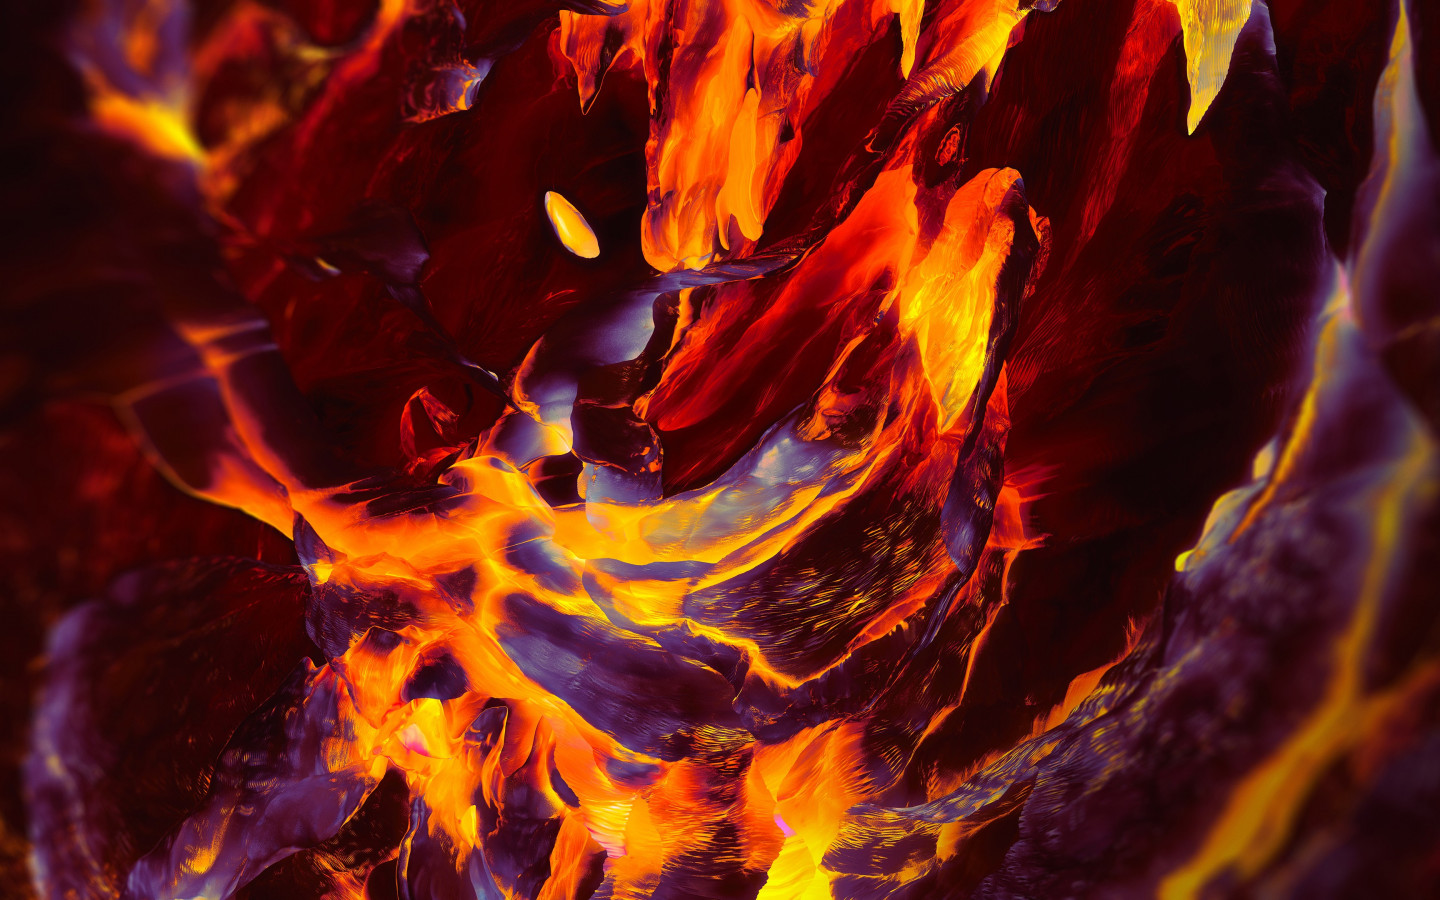 OnePlus Fire wallpaper 1440x900